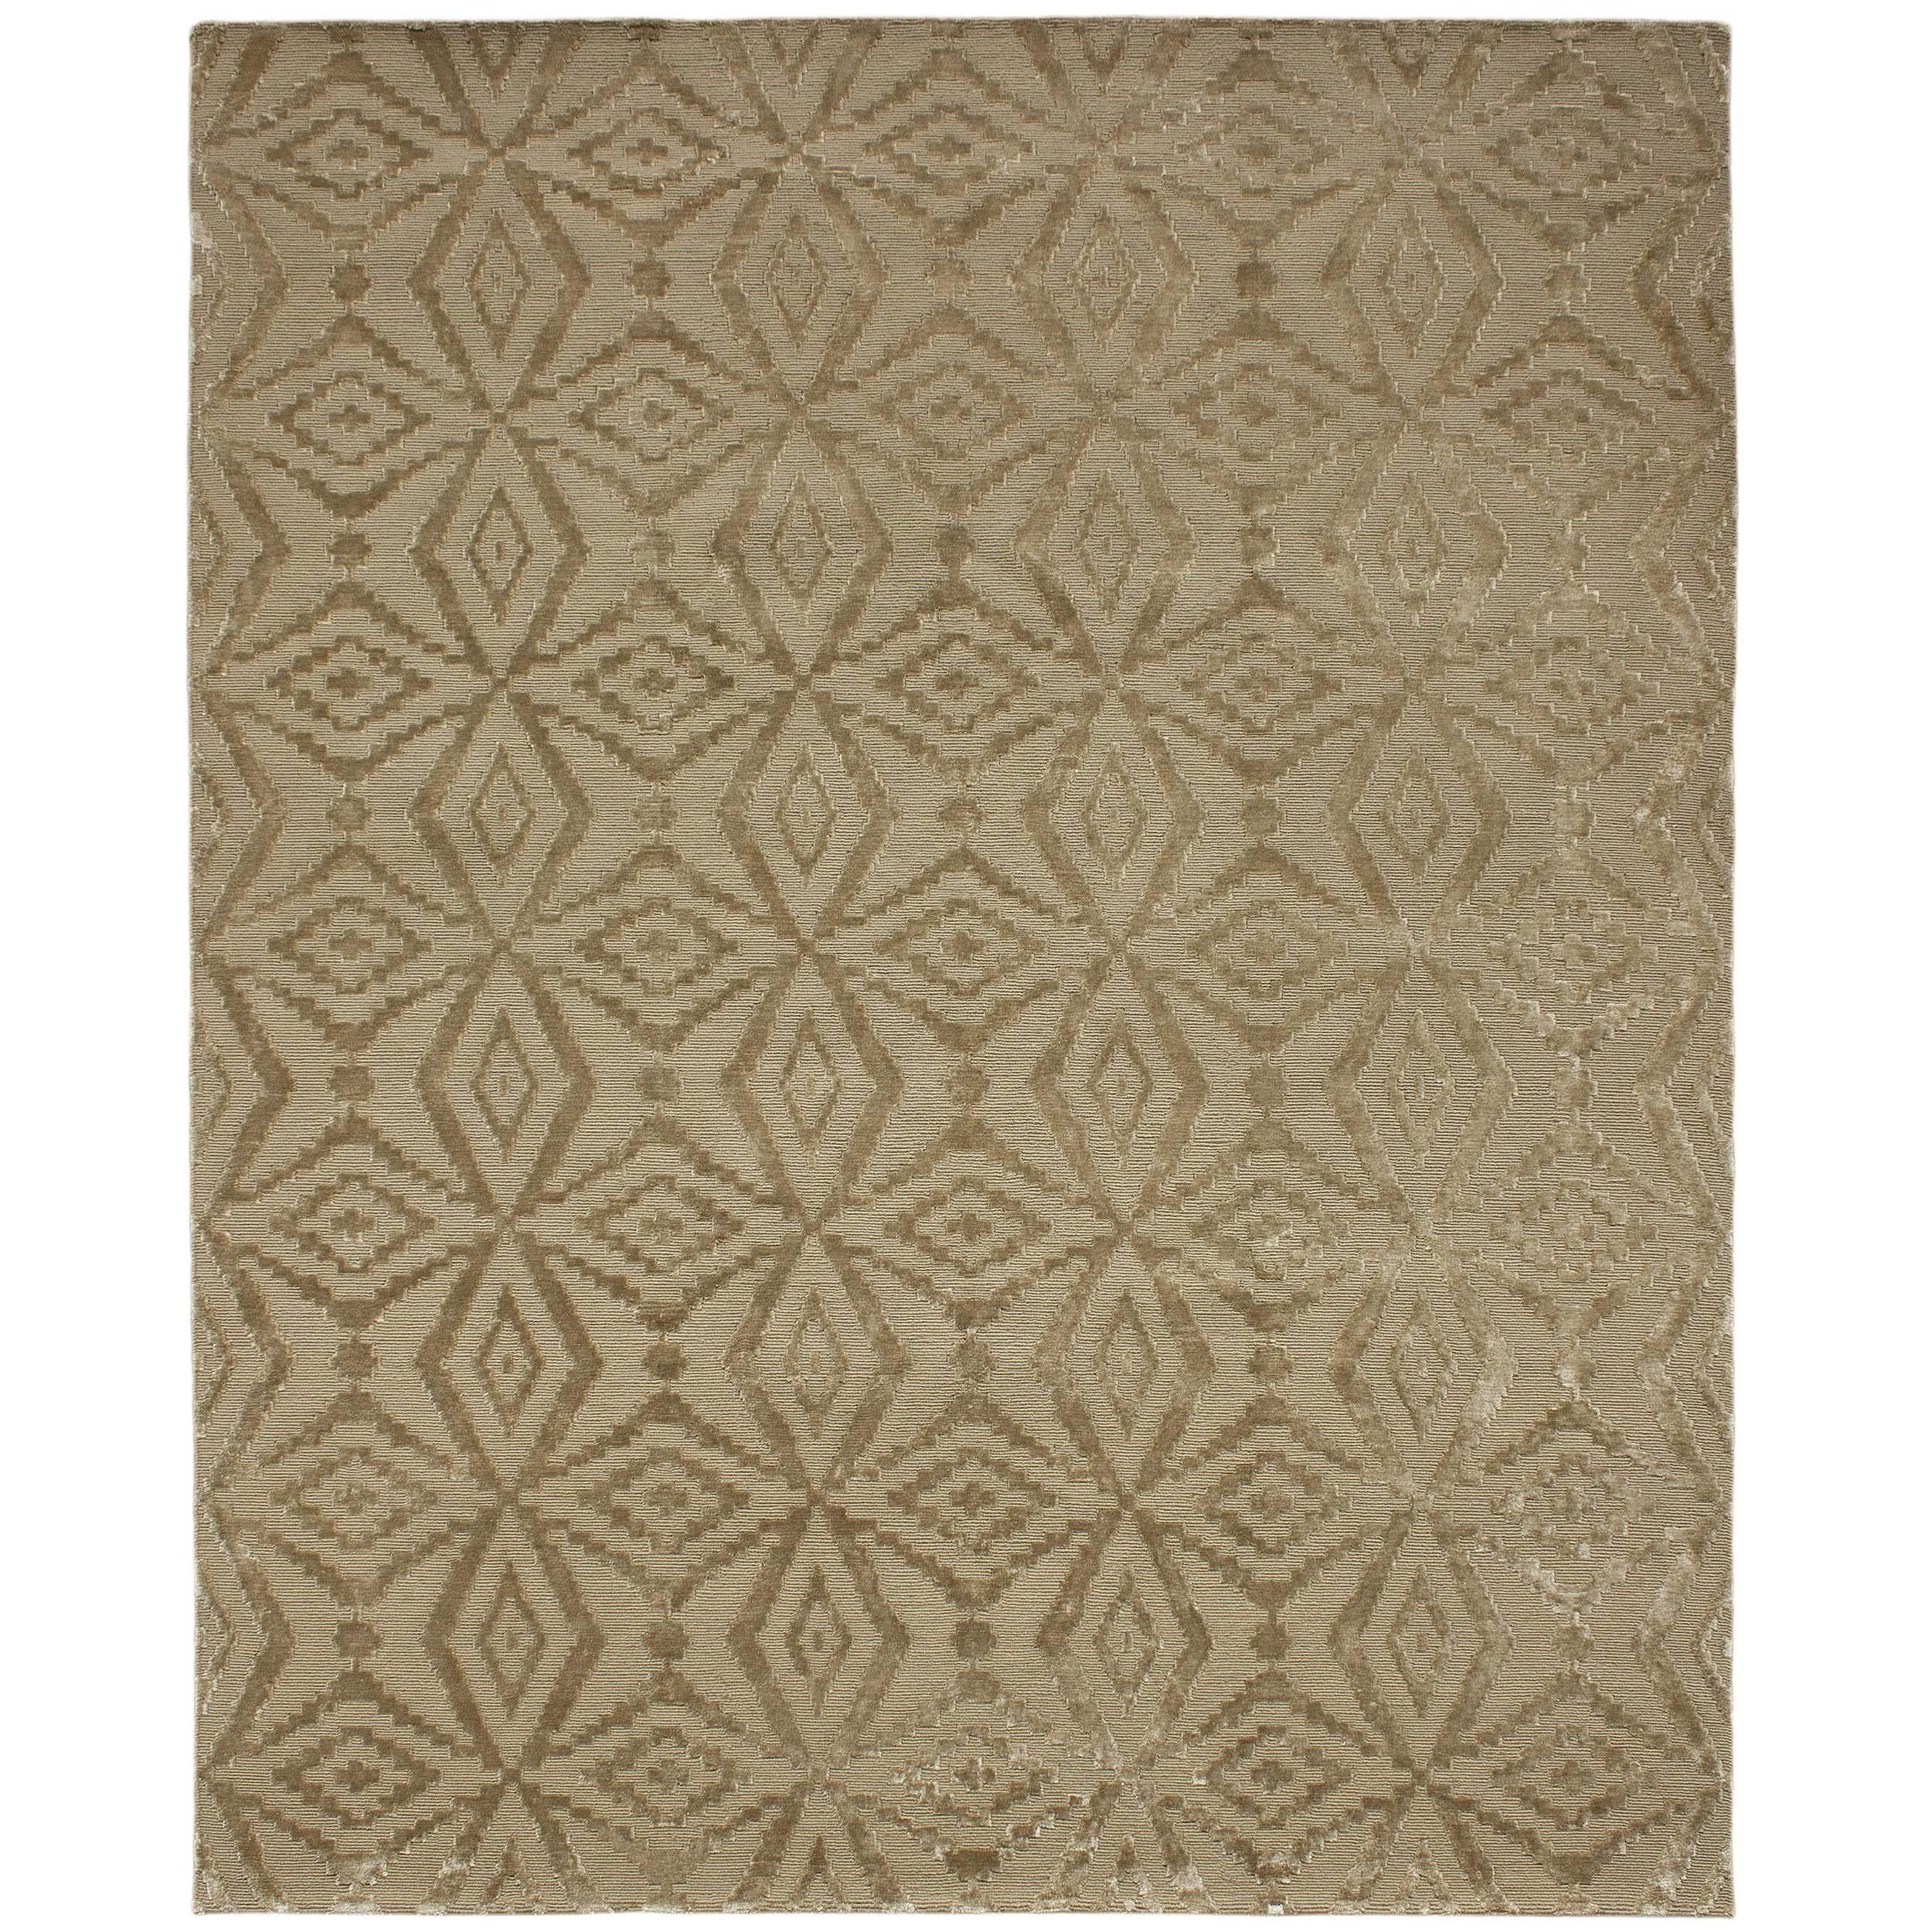 Luxuriöser Moderner Handgeknüpfter Teppich Thistle Rye 10x14